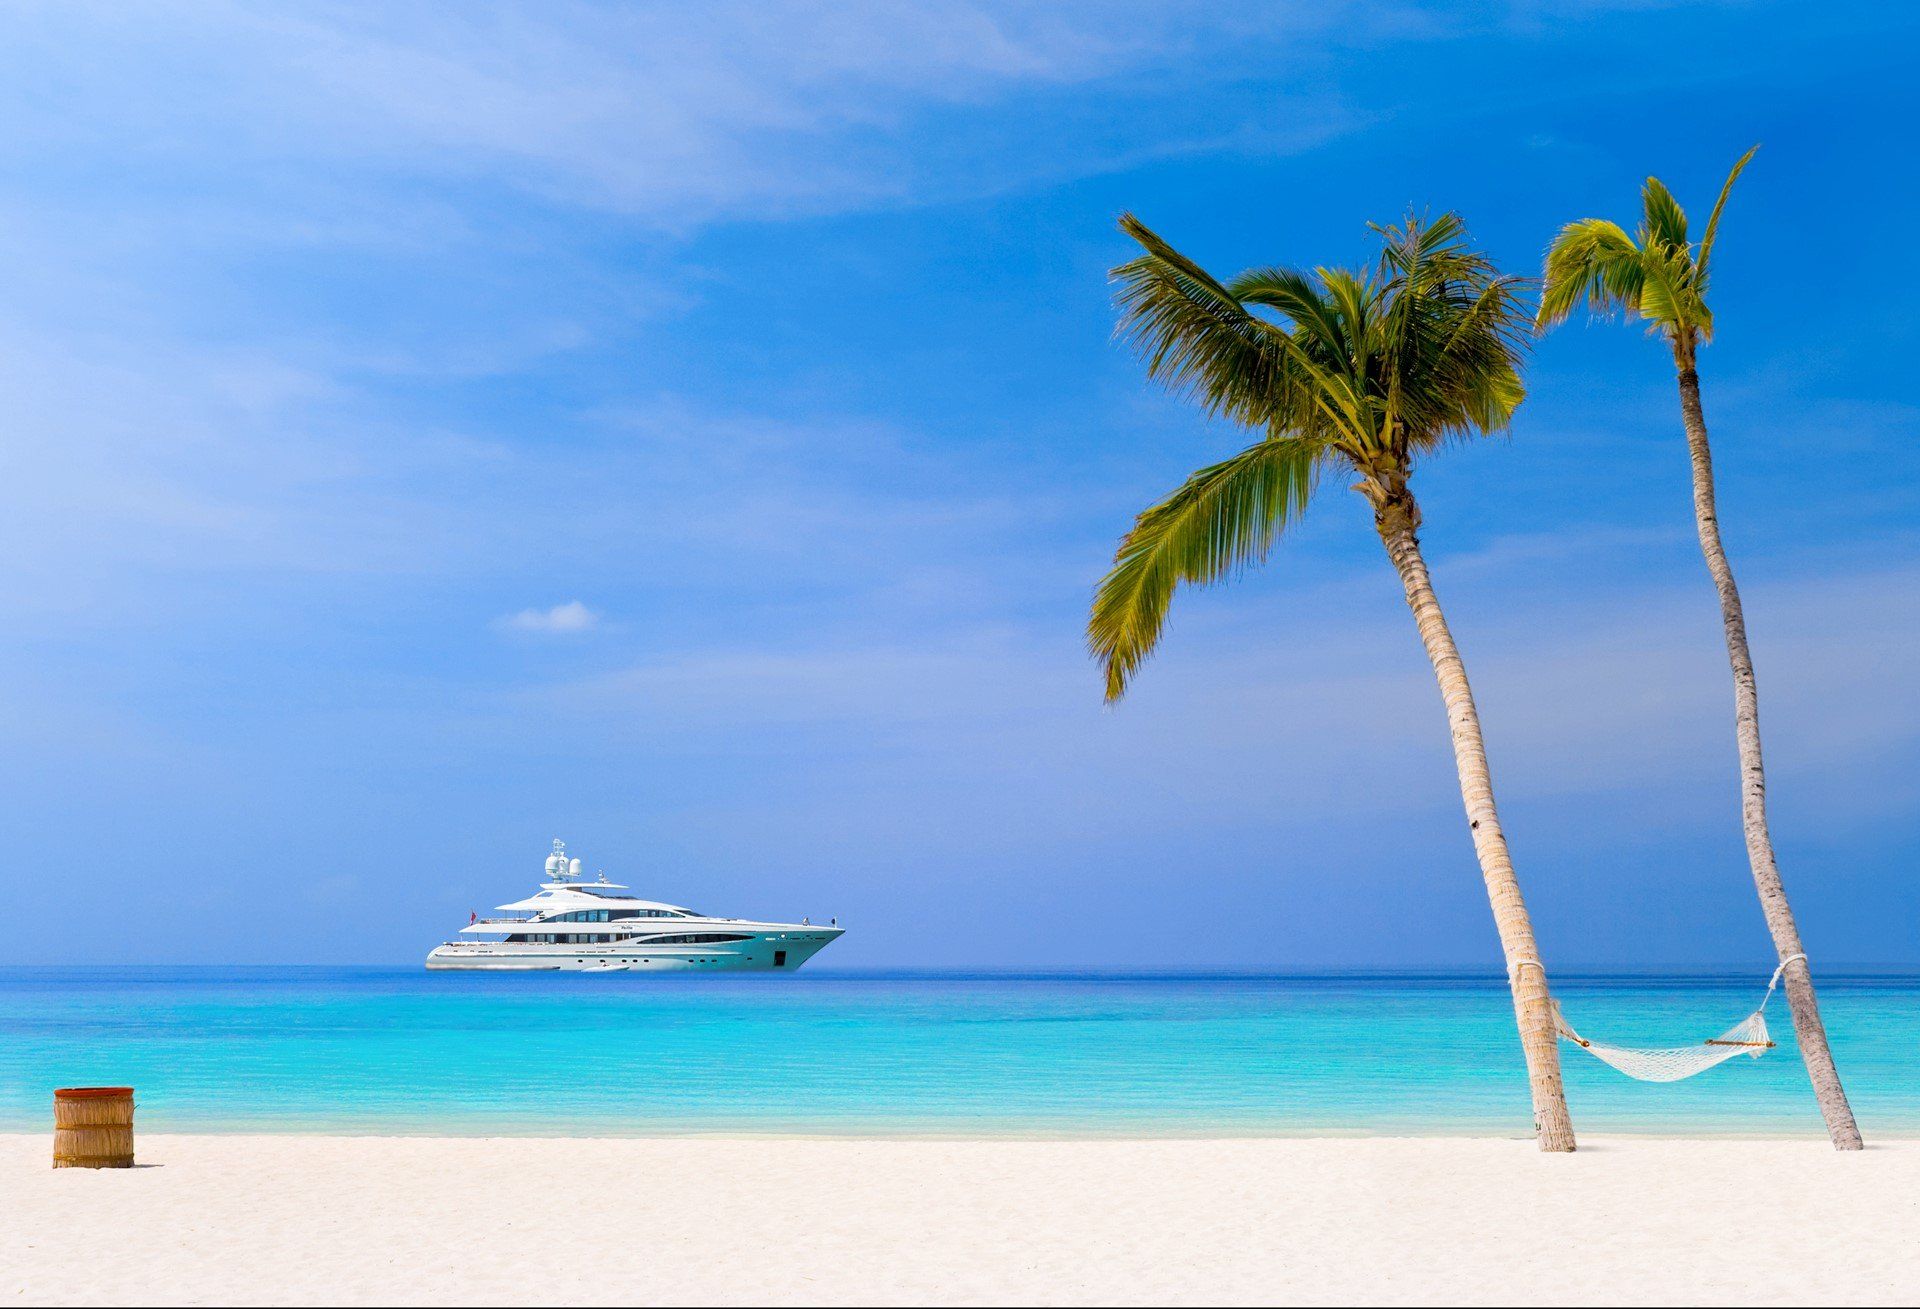 A superyachtyacht in a Caribbean beach